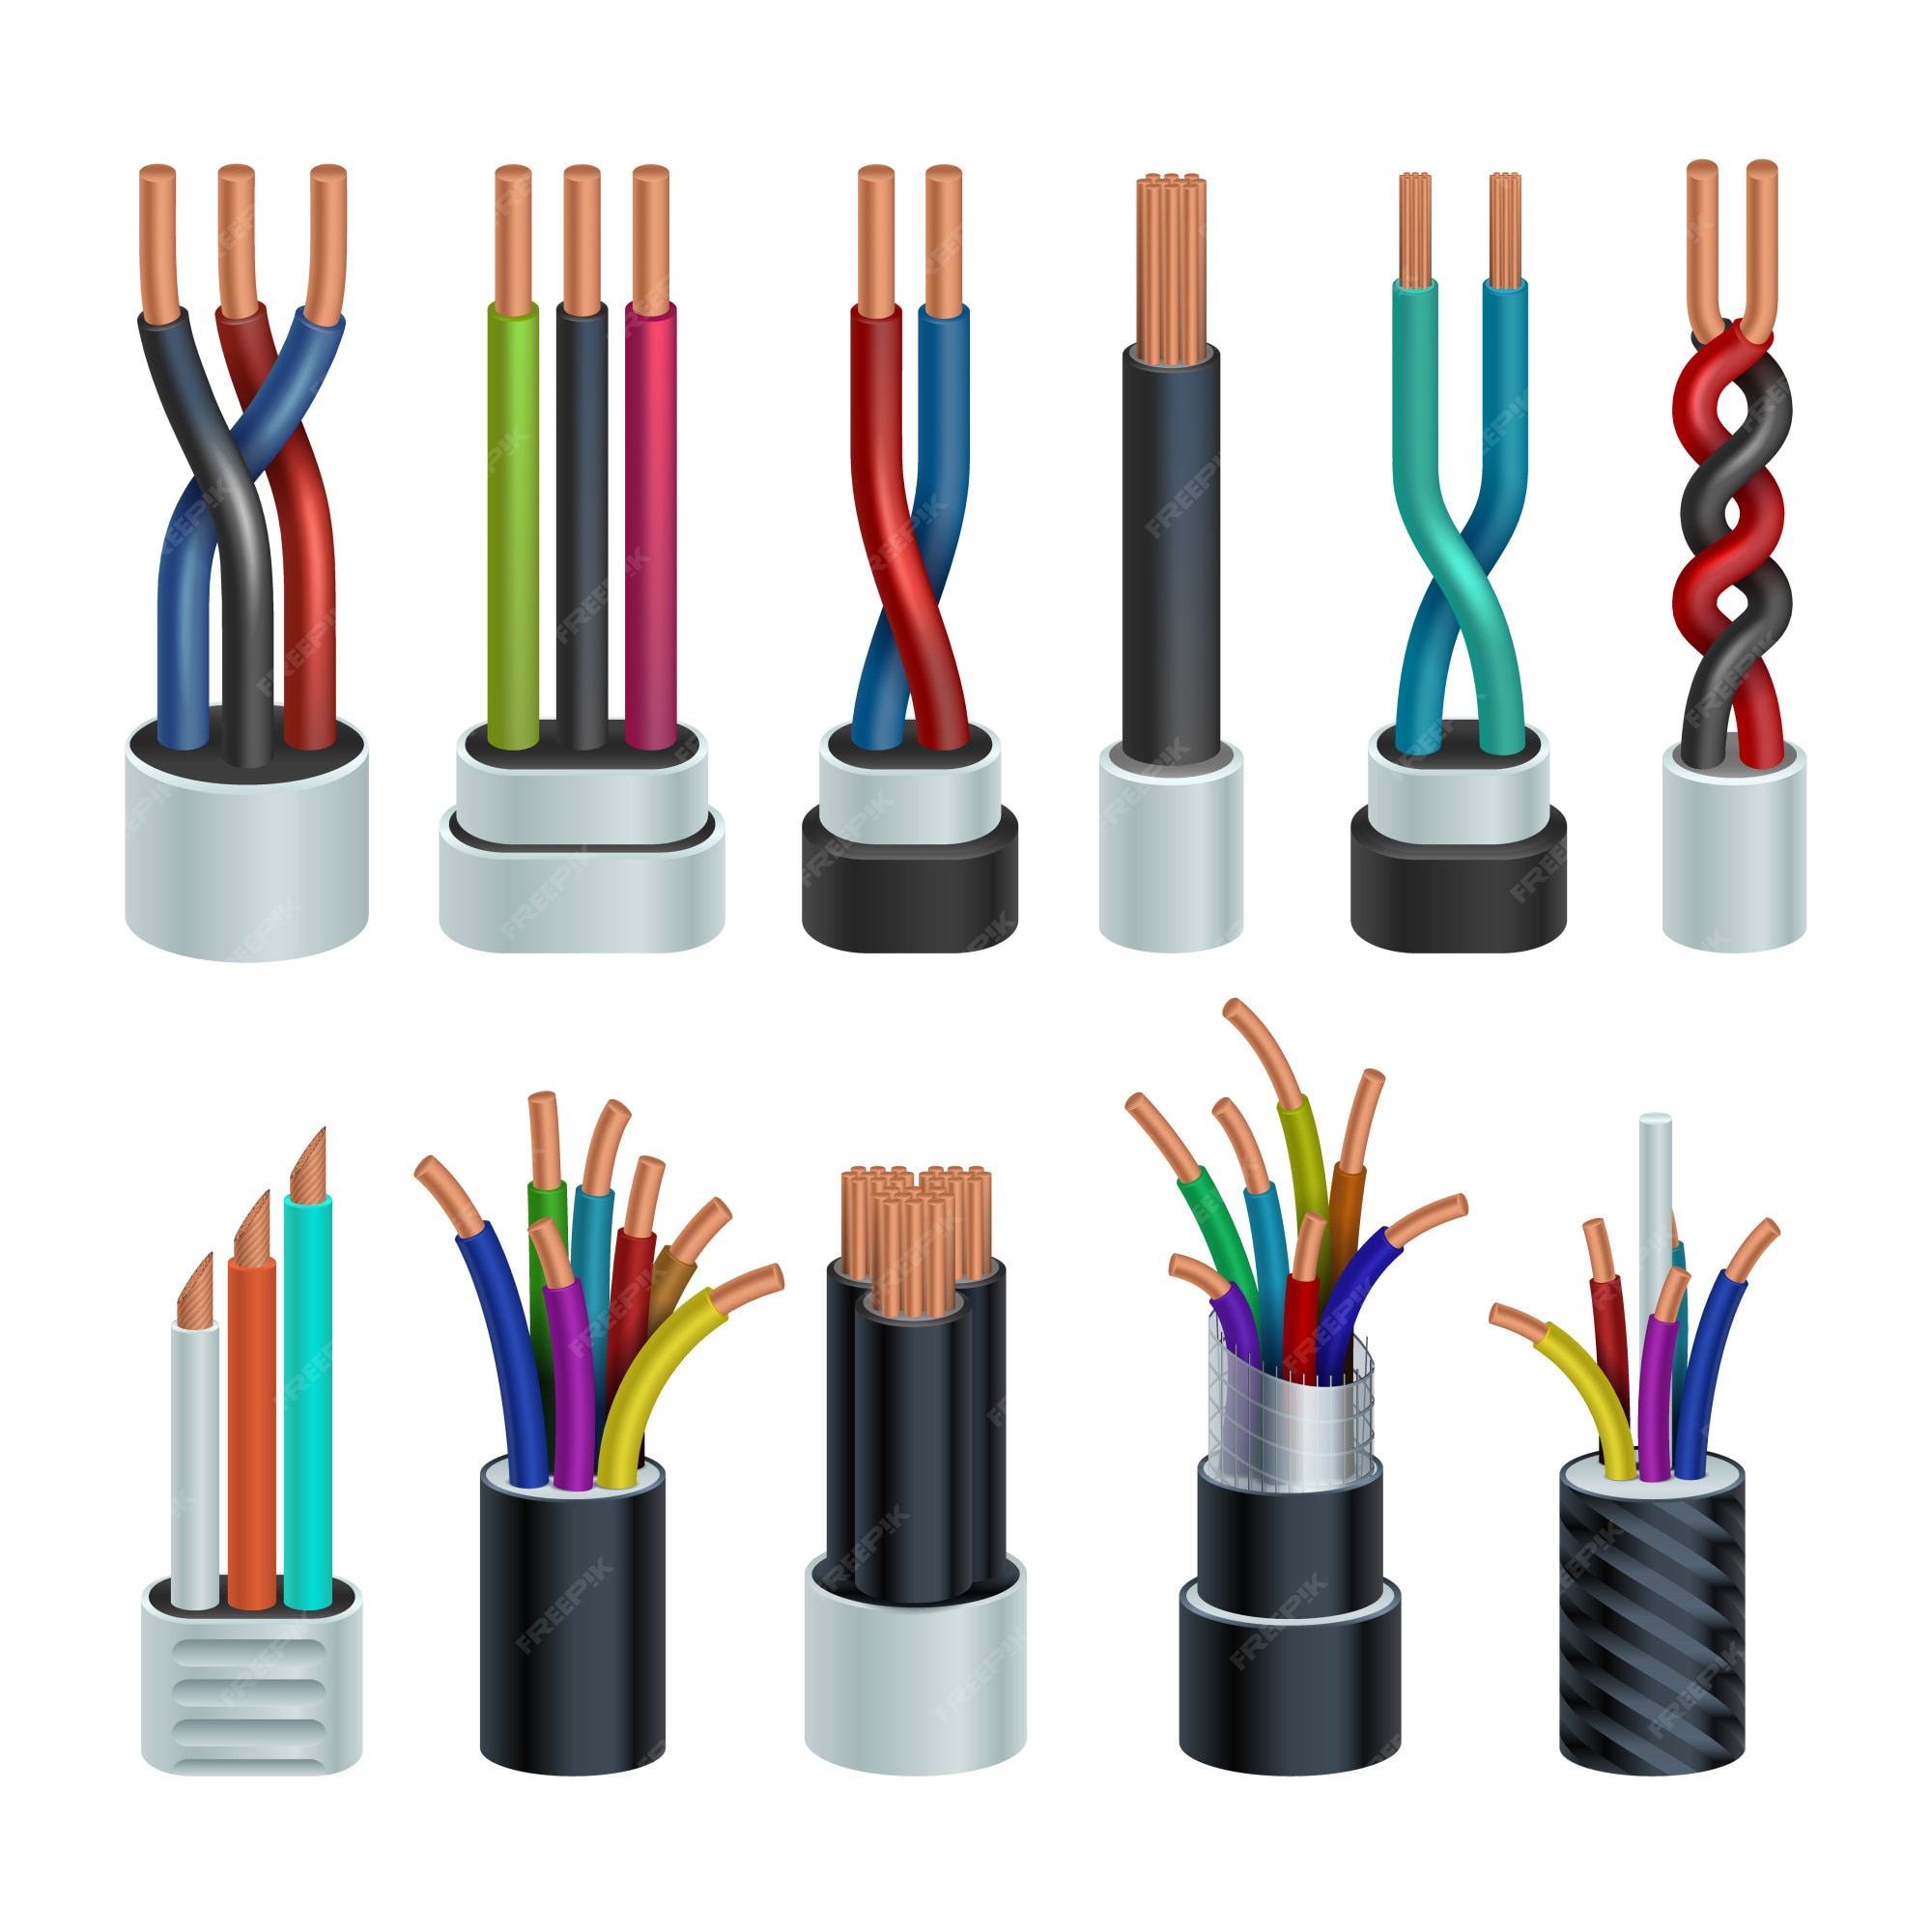 Ten cuidado Reino lona Cables industriales eléctricos realistas, cables eléctricos de cobre  conjunto aislado | Vector Premium